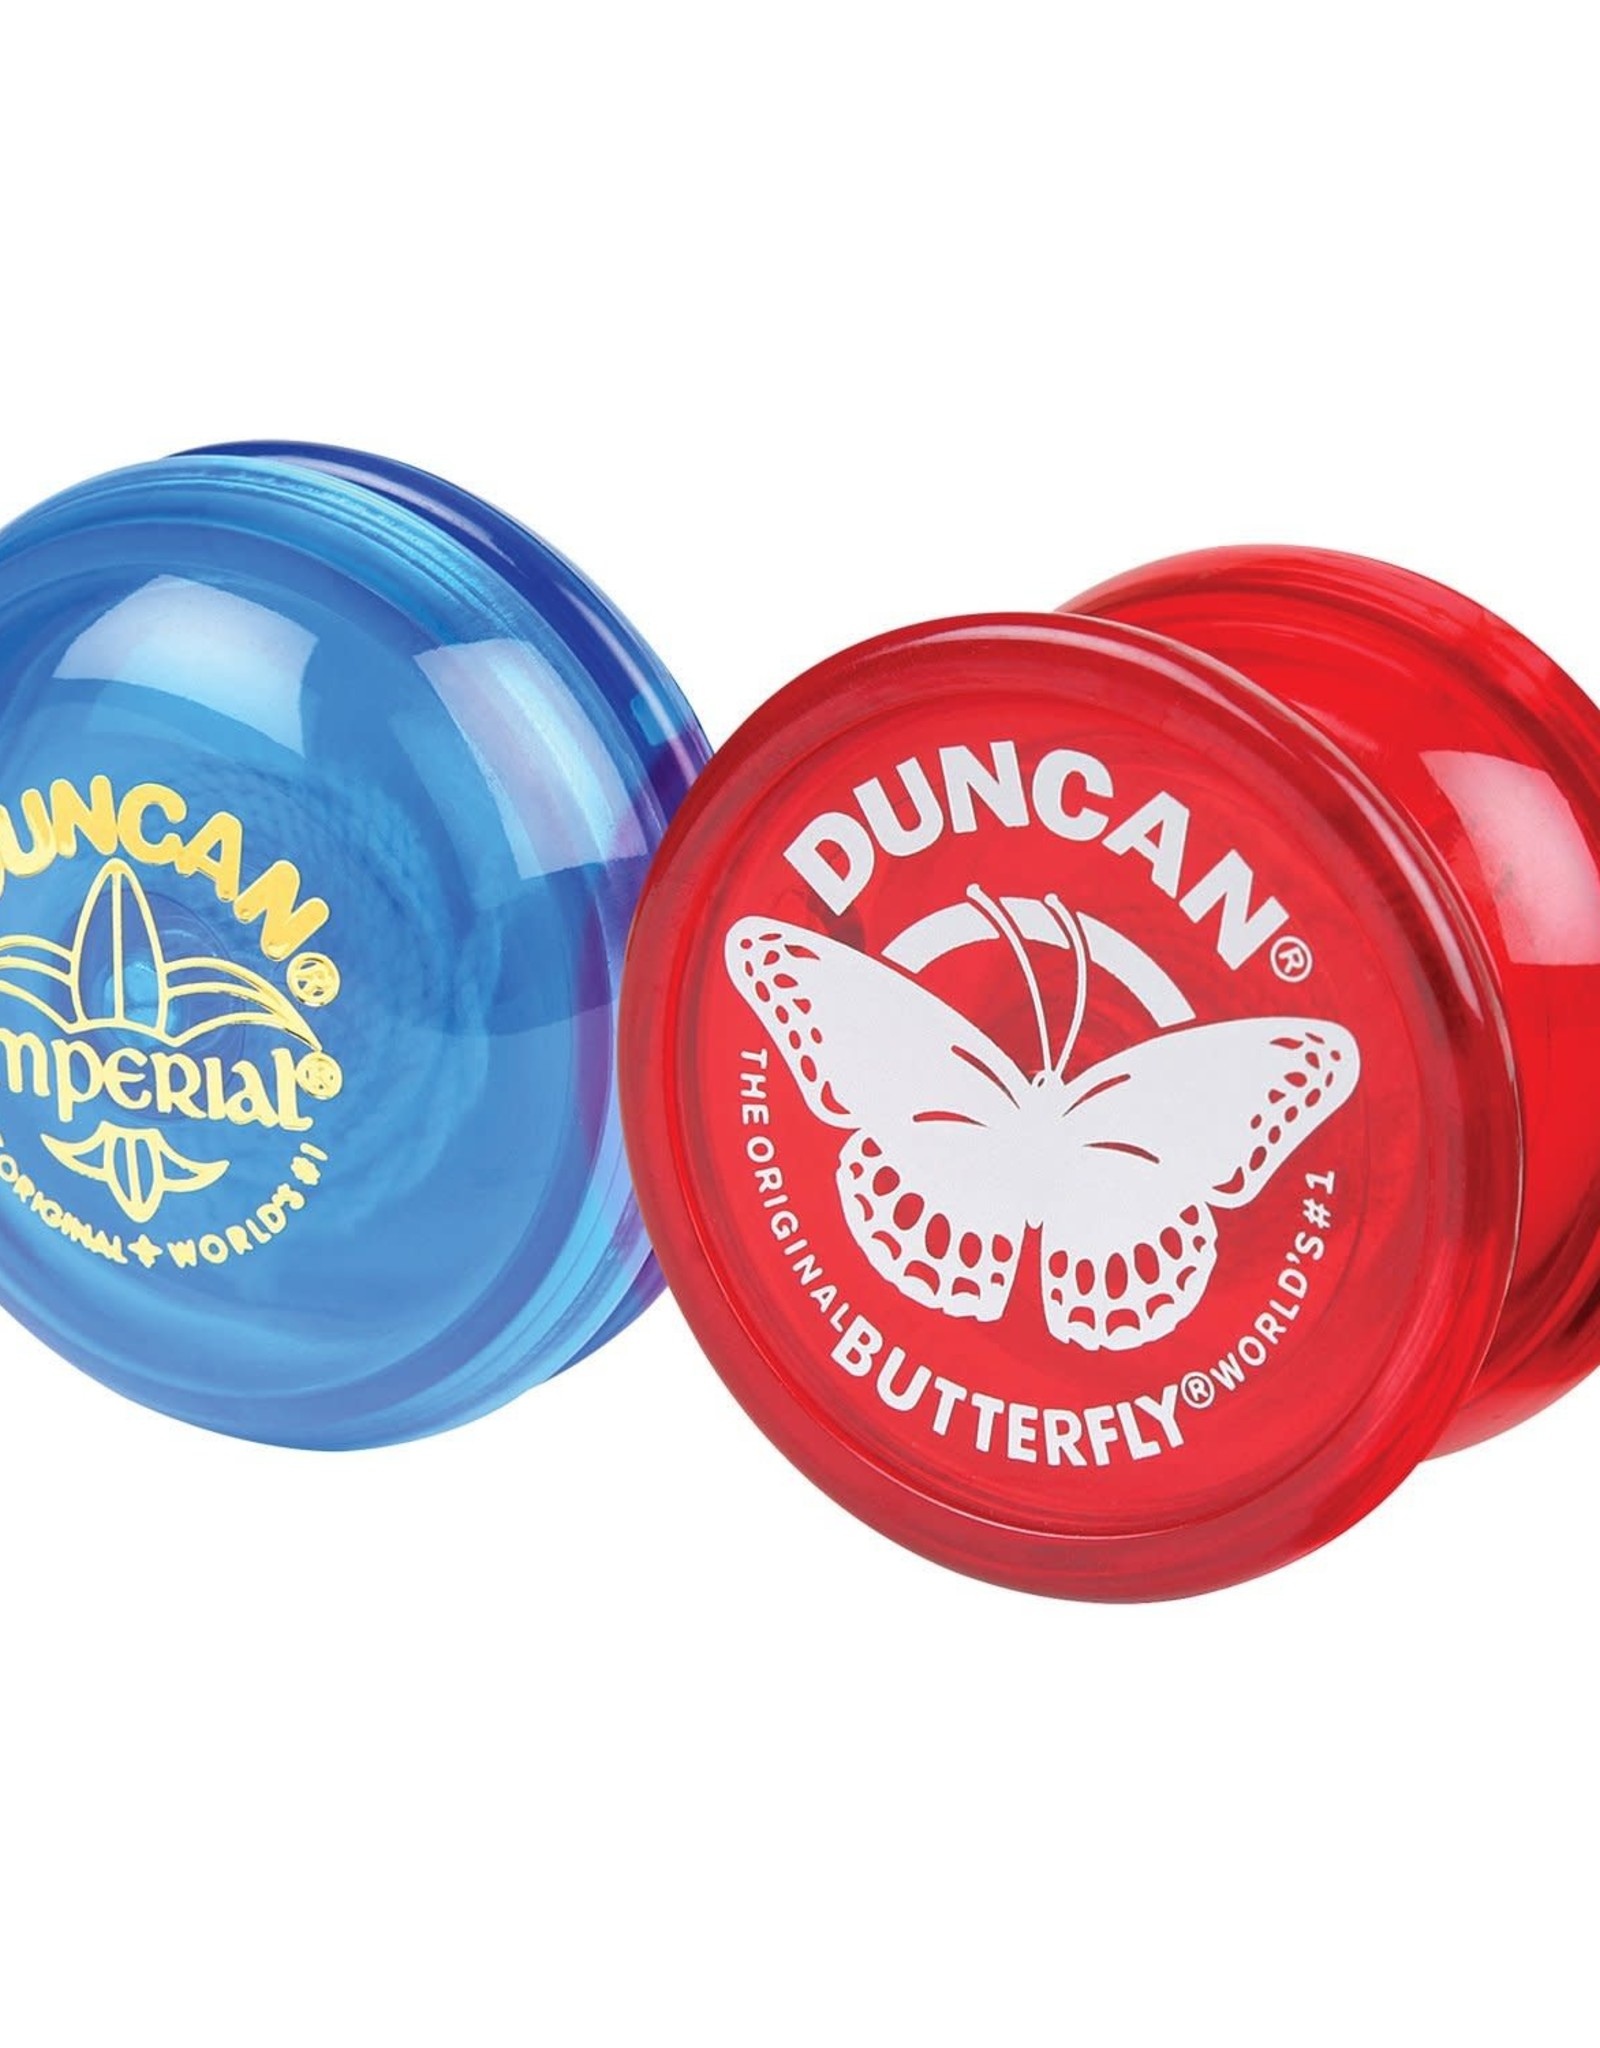 Duncan Duncan Classic Butterfly Yo-Yo! Assorted